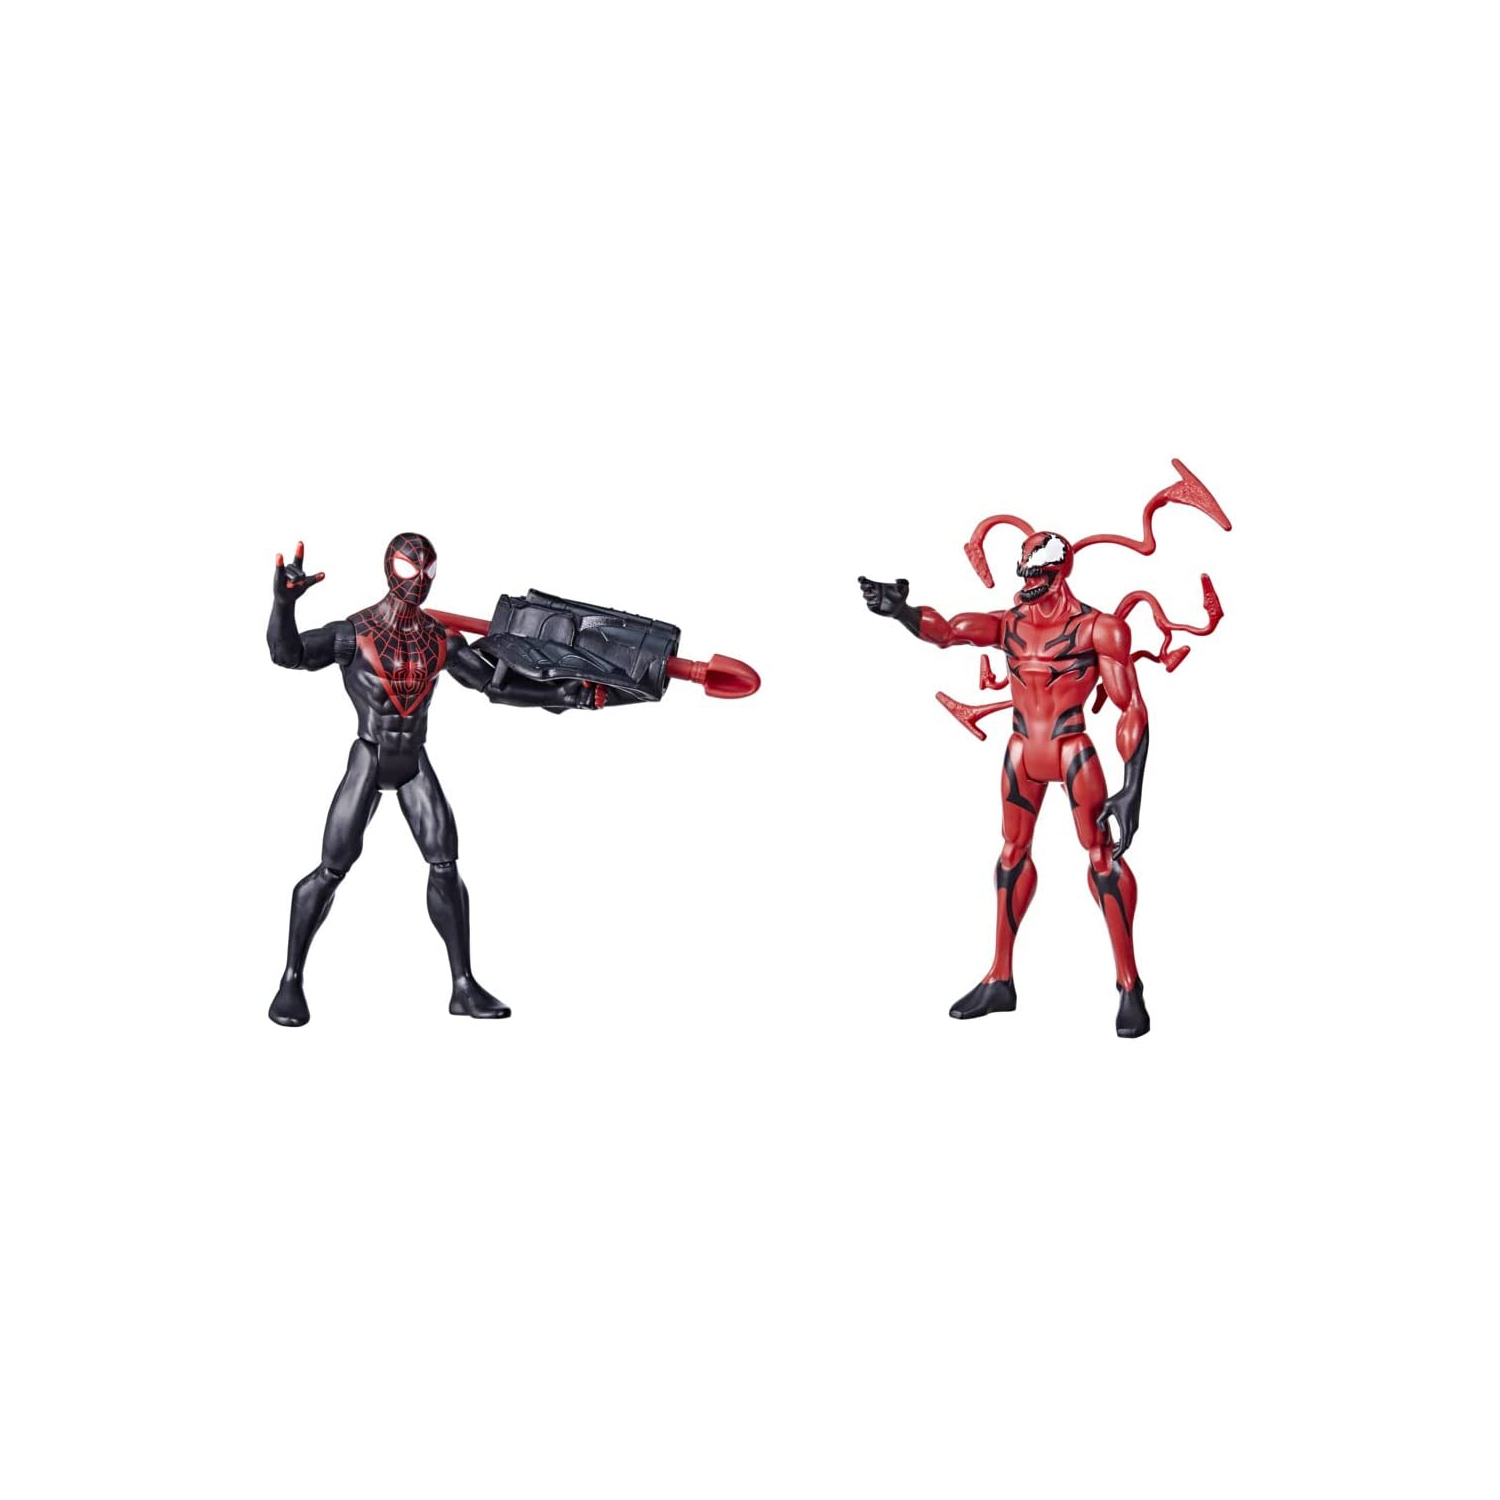 Miles Morales vs Carnage (2-Pack) Marvel Spider-Man Battle Packs Action Figures